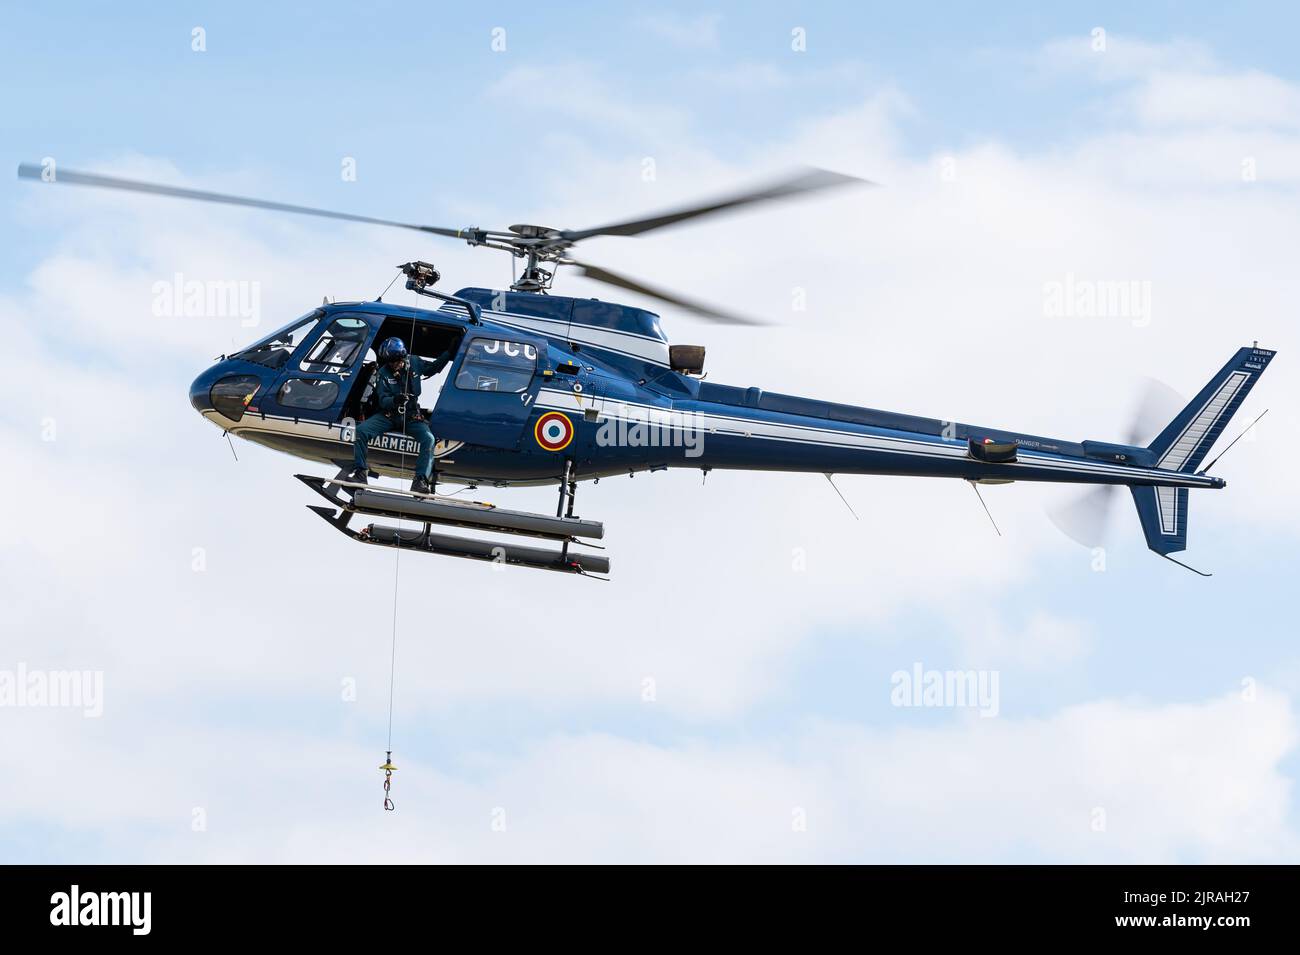 Un hélicoptère Eurocopter AS350 Écureuil de la Gendarmerie nationale. Banque D'Images